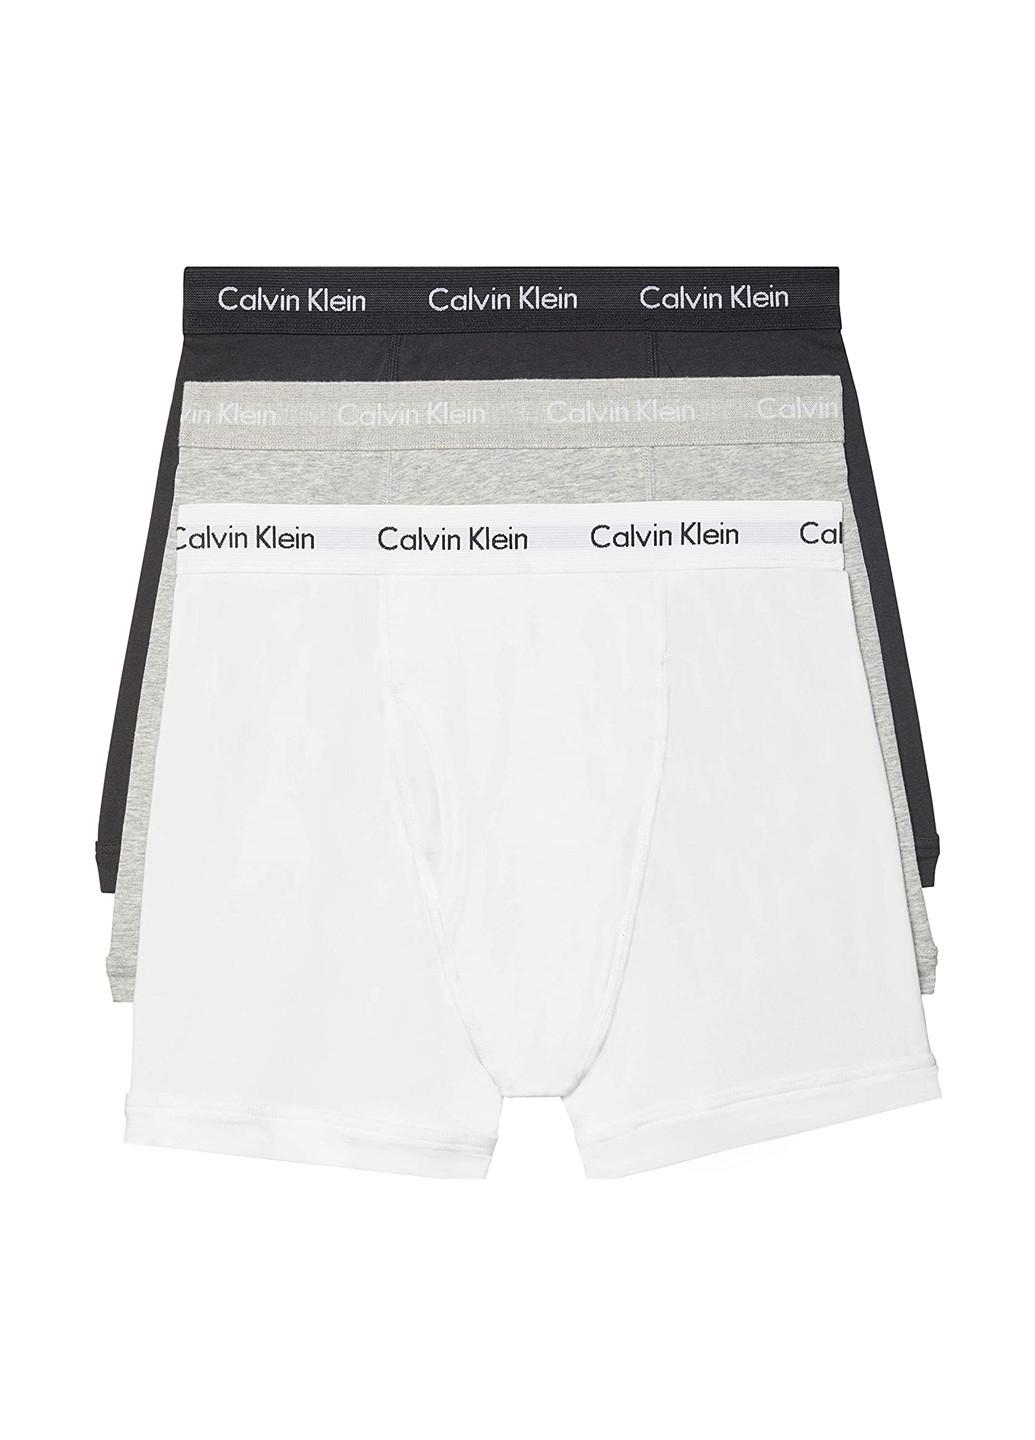 Трусы (3 шт.) Calvin Klein боксеры логотипы комбинированные домашние трикотаж, хлопок